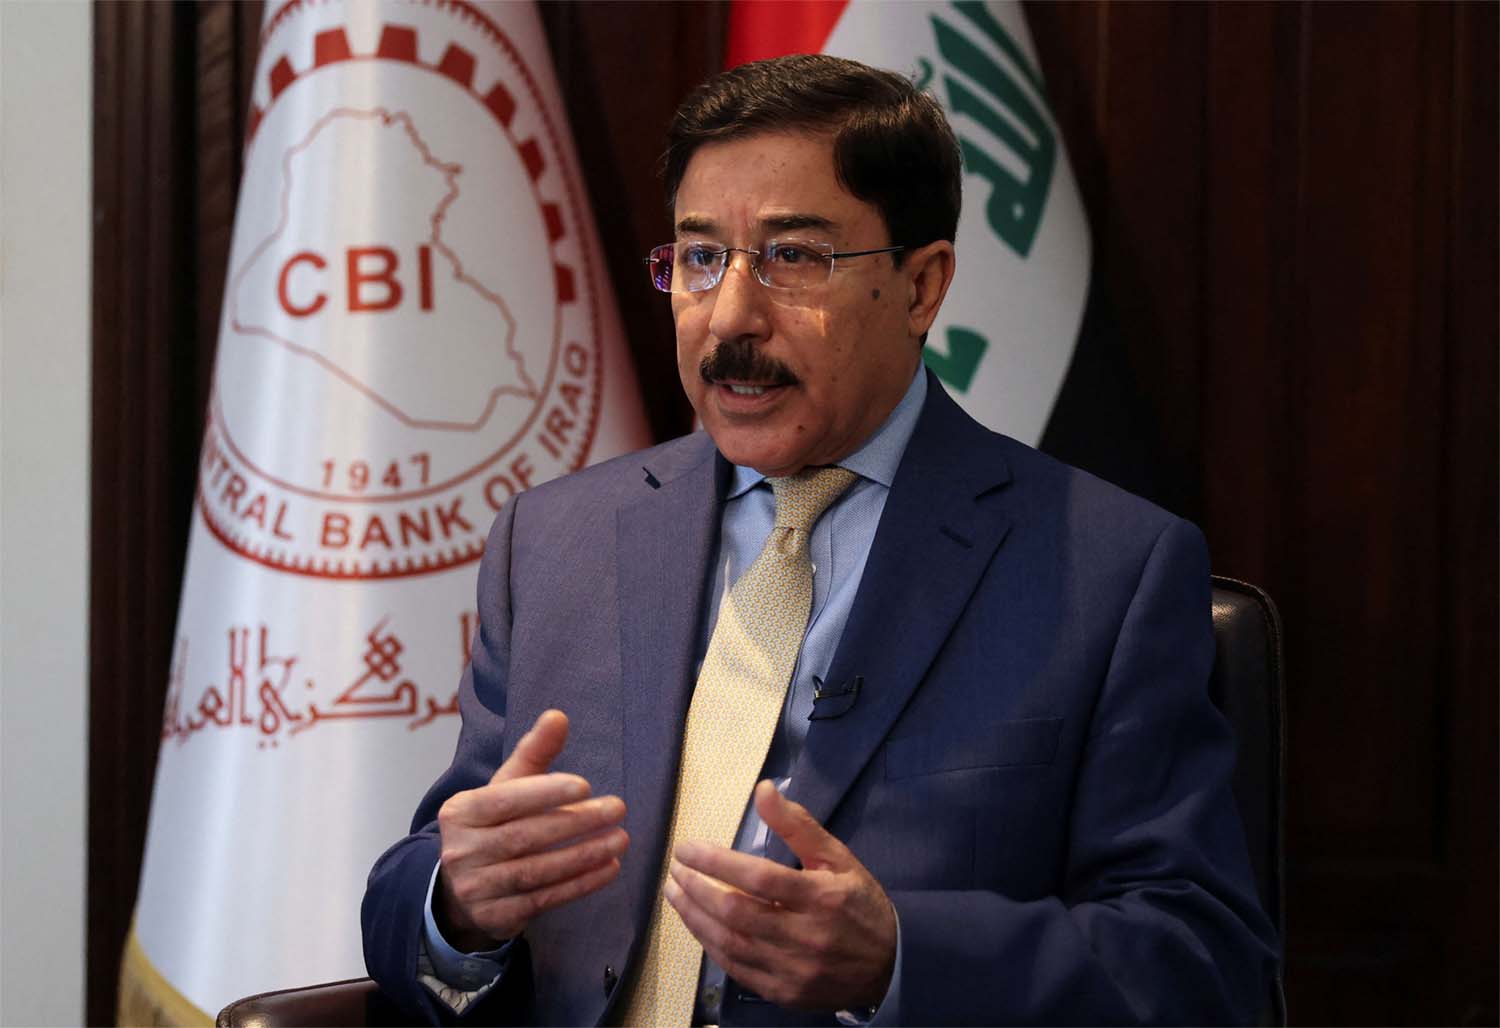 Iraqi central bank (CBI) Governor Ali Al-Allaq